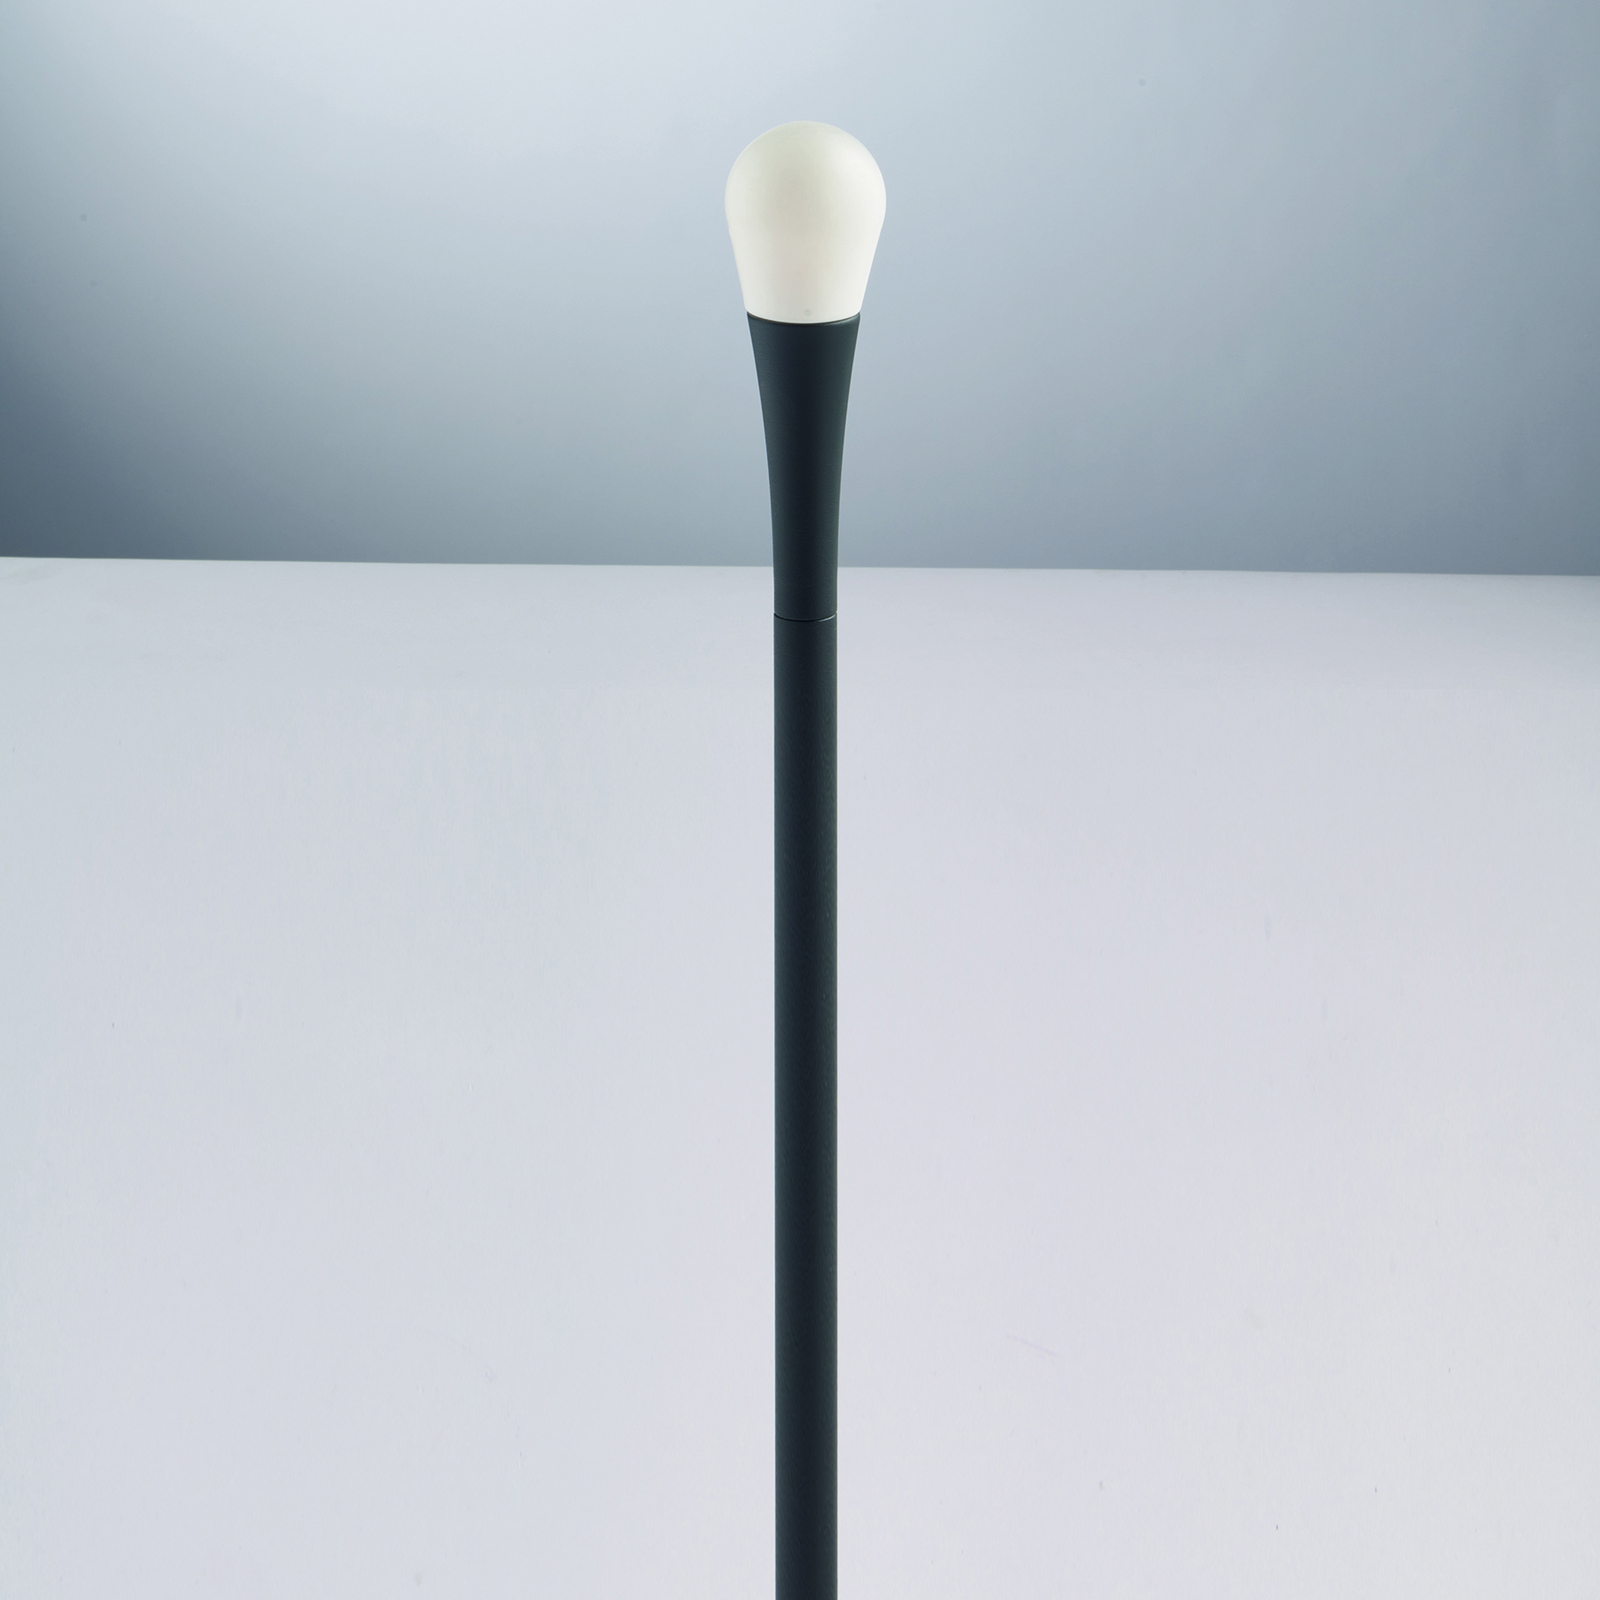 Słupek oświetleniowy Drop, IP65, 74 cm wysokości